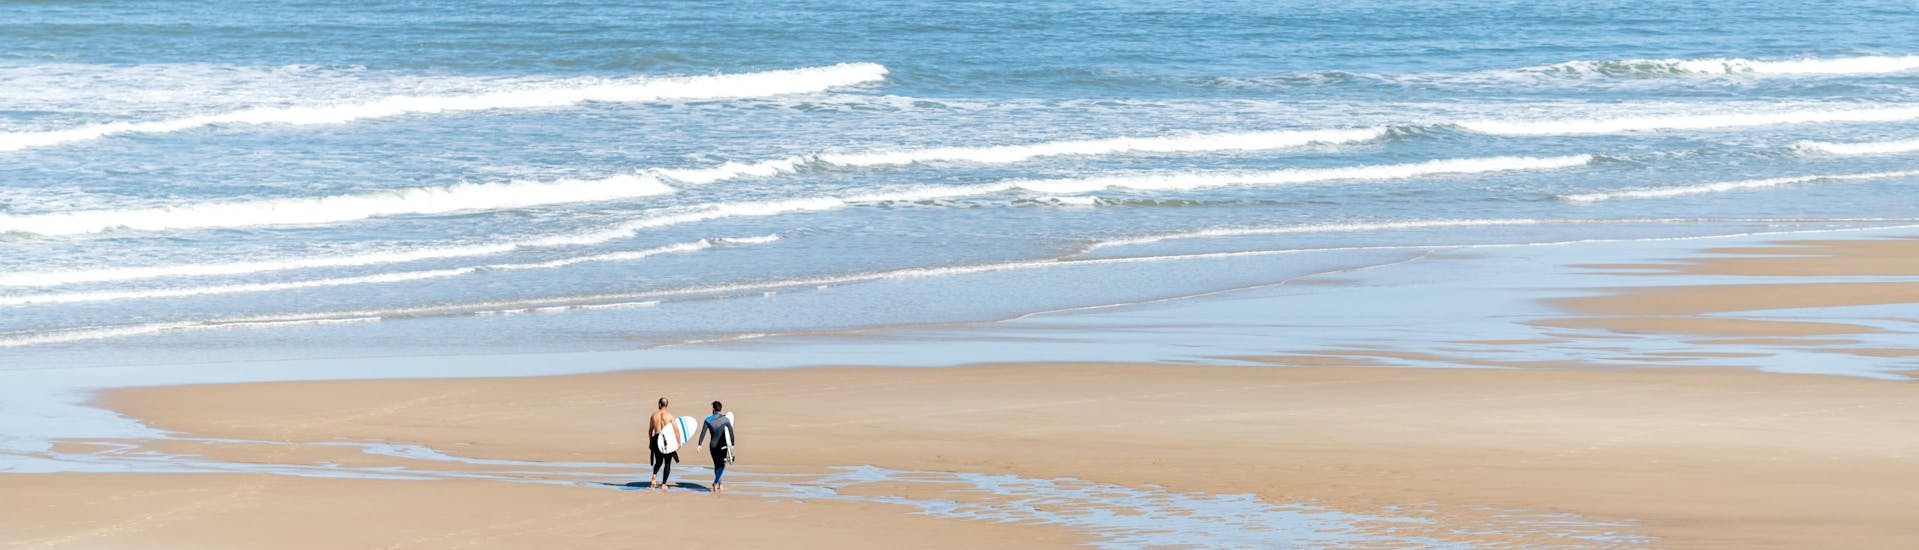 Deux hommes marchent sur la plage centrale de Lacanau avec leur planche de surf sous le bras, où se déroulent de nombreux cours de surf.